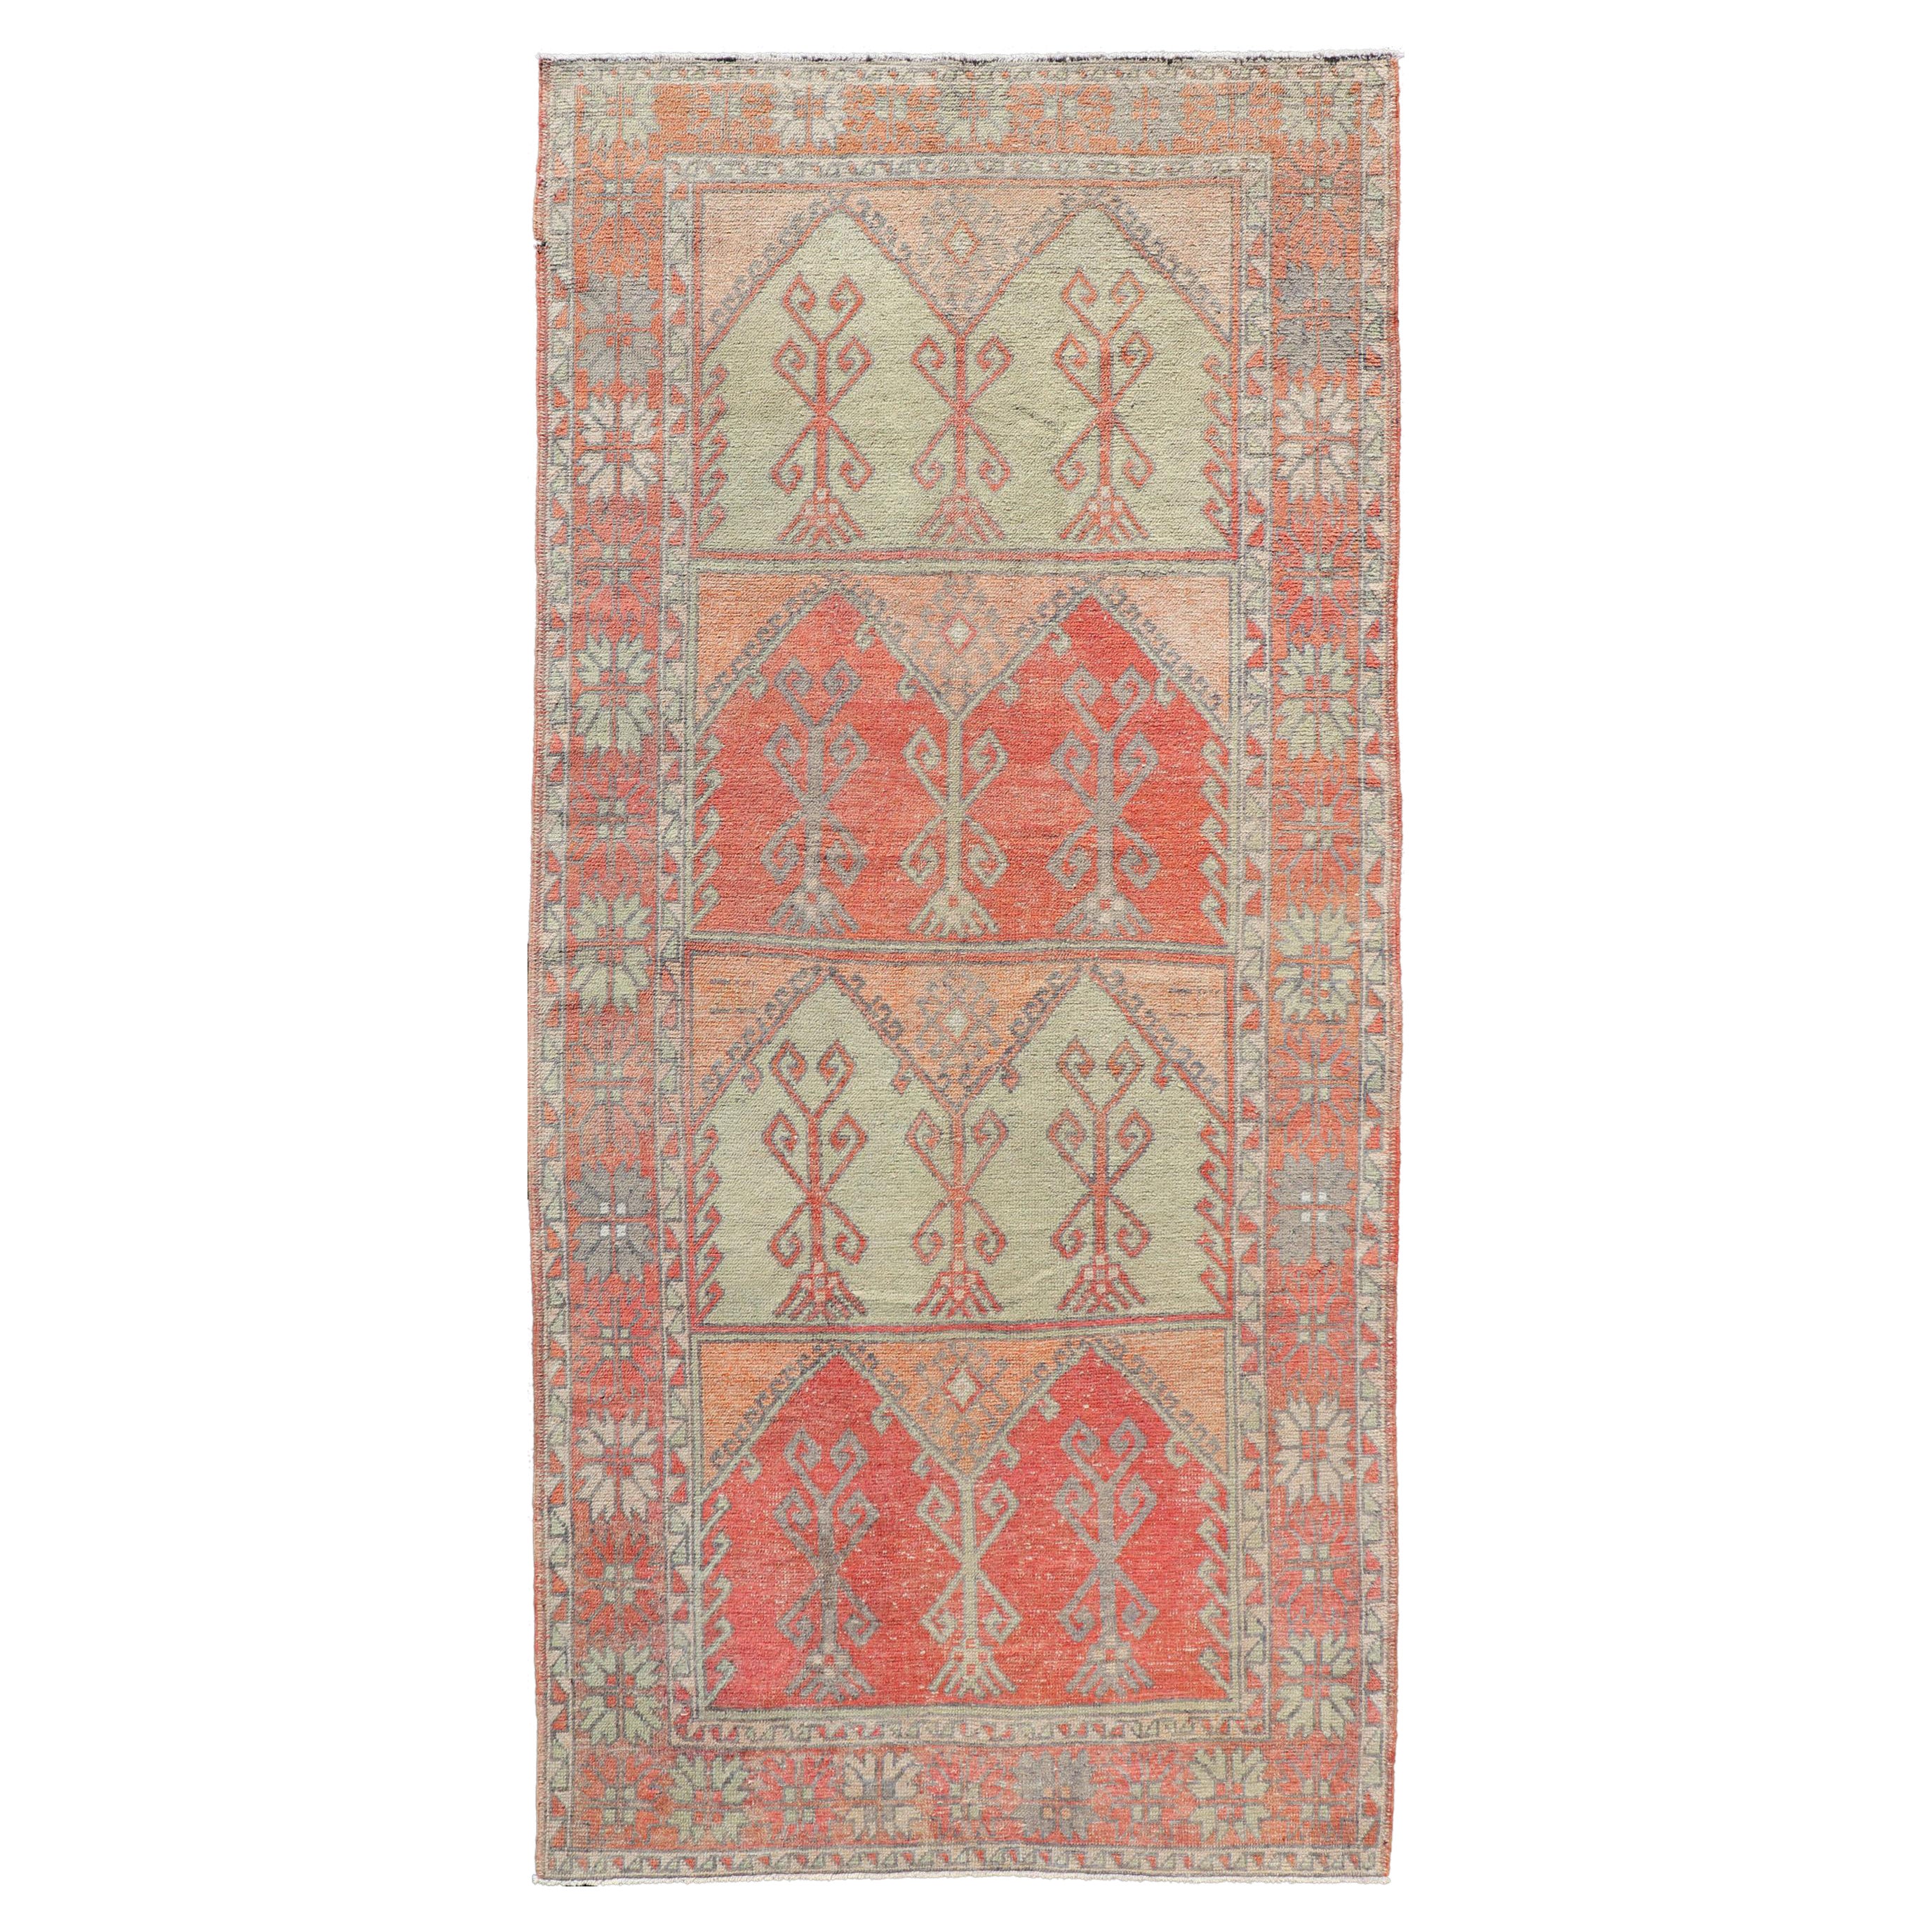 Gallery Teppich, türkischer Vintage-Teppich in verblasstem Rot, Koralle, Orange, Weichrosa und Grün